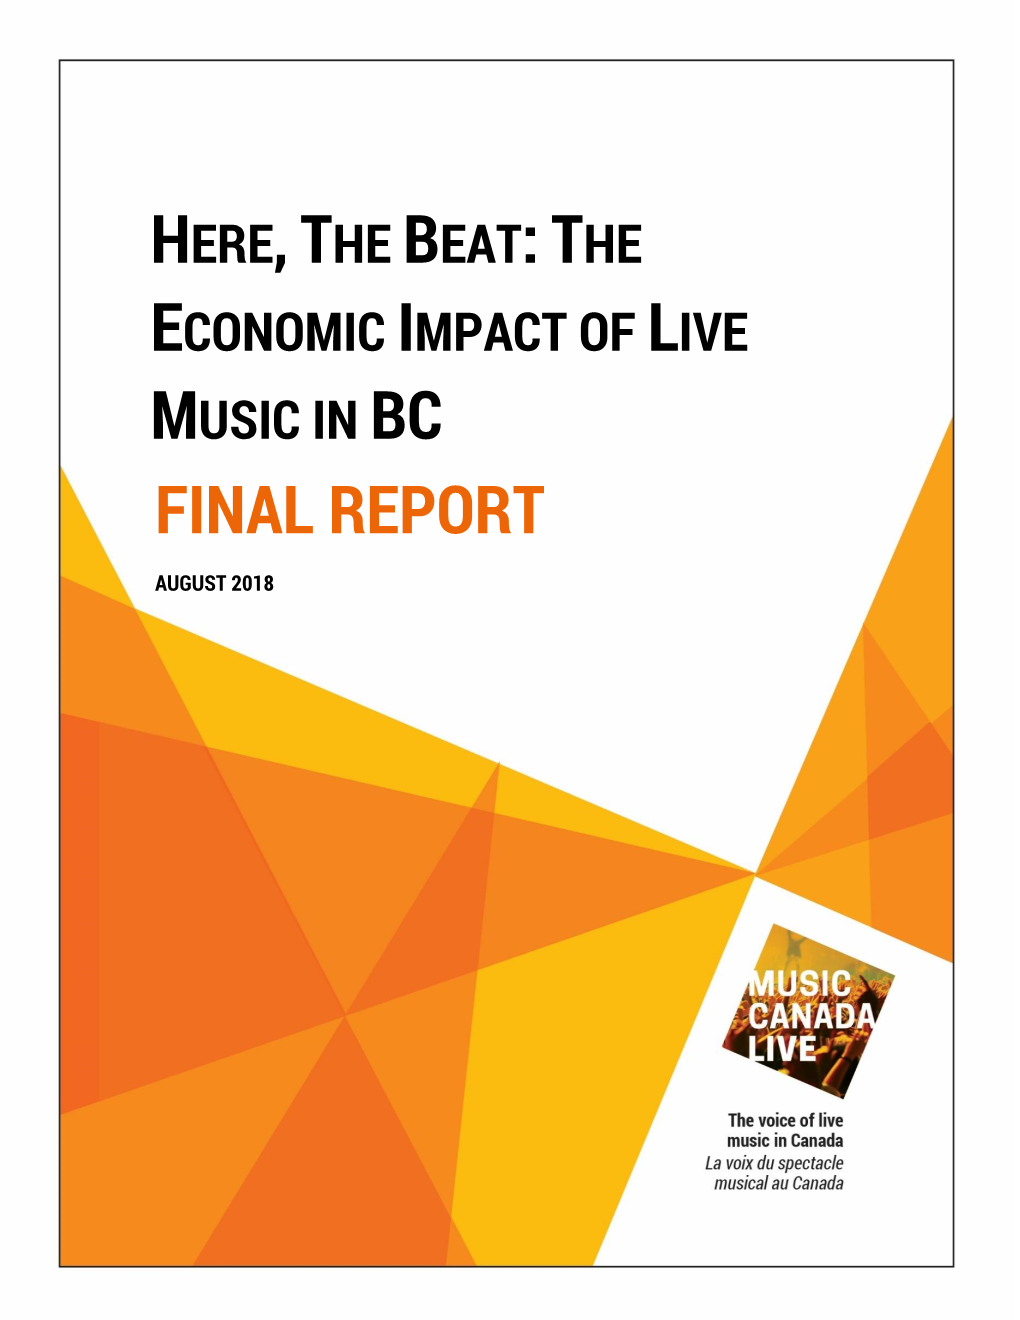 Economic Impact of Music in BC